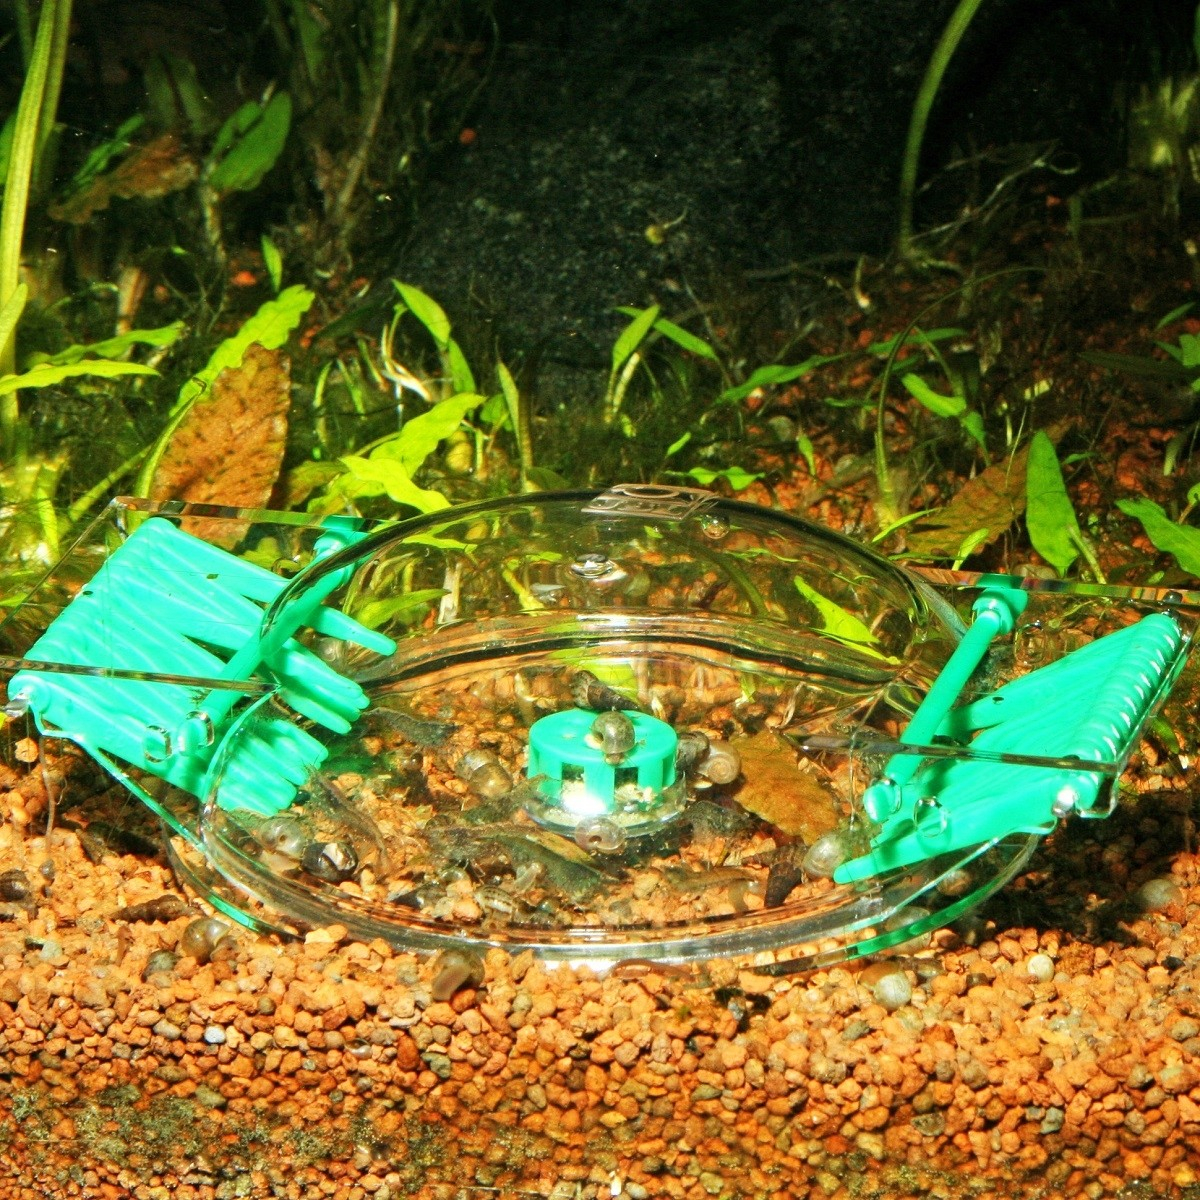 JBL LimCollect trappola per lumache per acquari d'acqua dolce